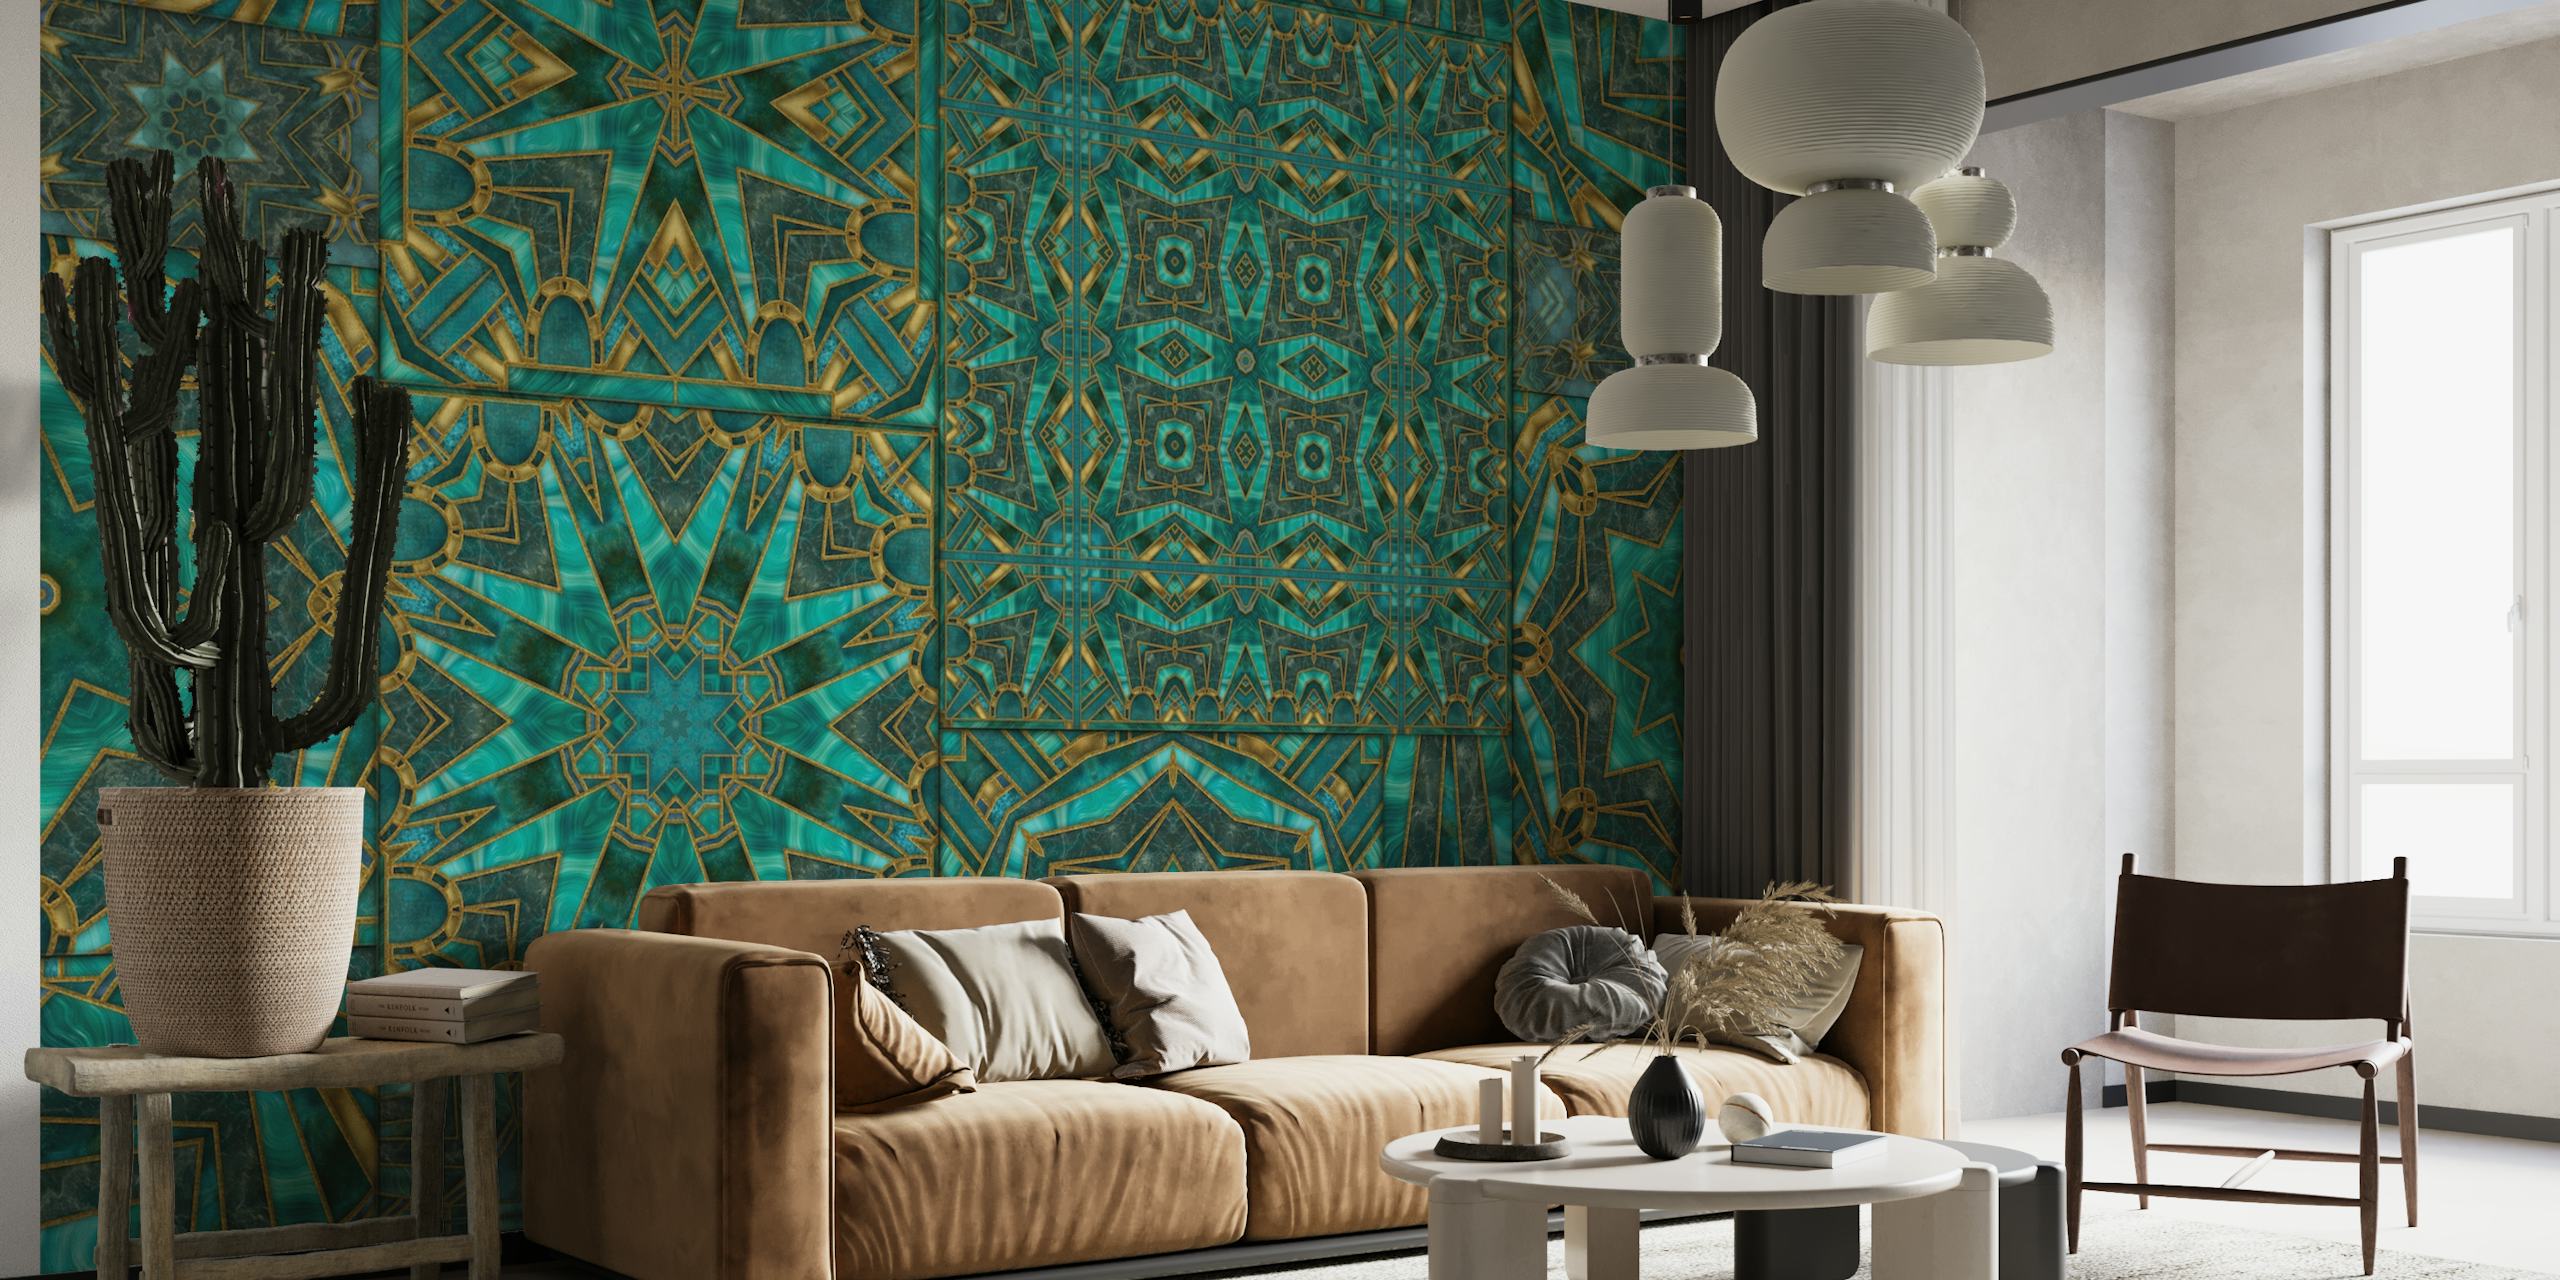 Art Deco meets Morocco Tiles 2 papel pintado